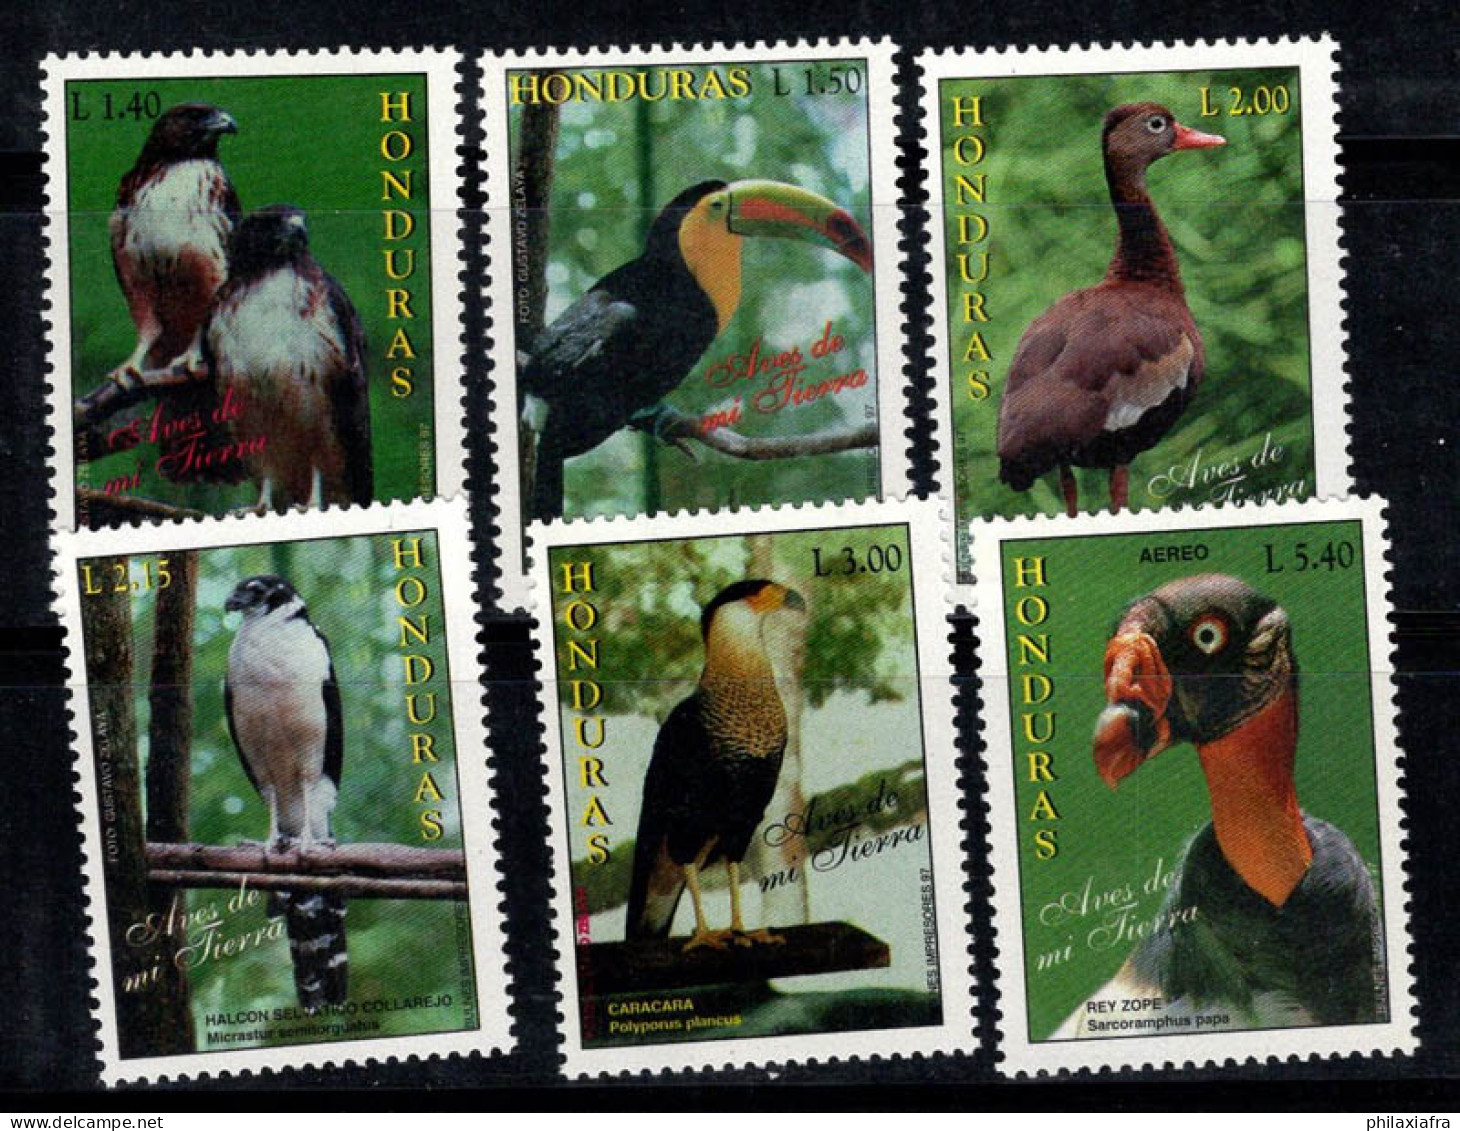 Honduras 1997 Mi. 1328-1333 Neuf ** 100% Poste Aérienne Oiseaux, Faune - Honduras